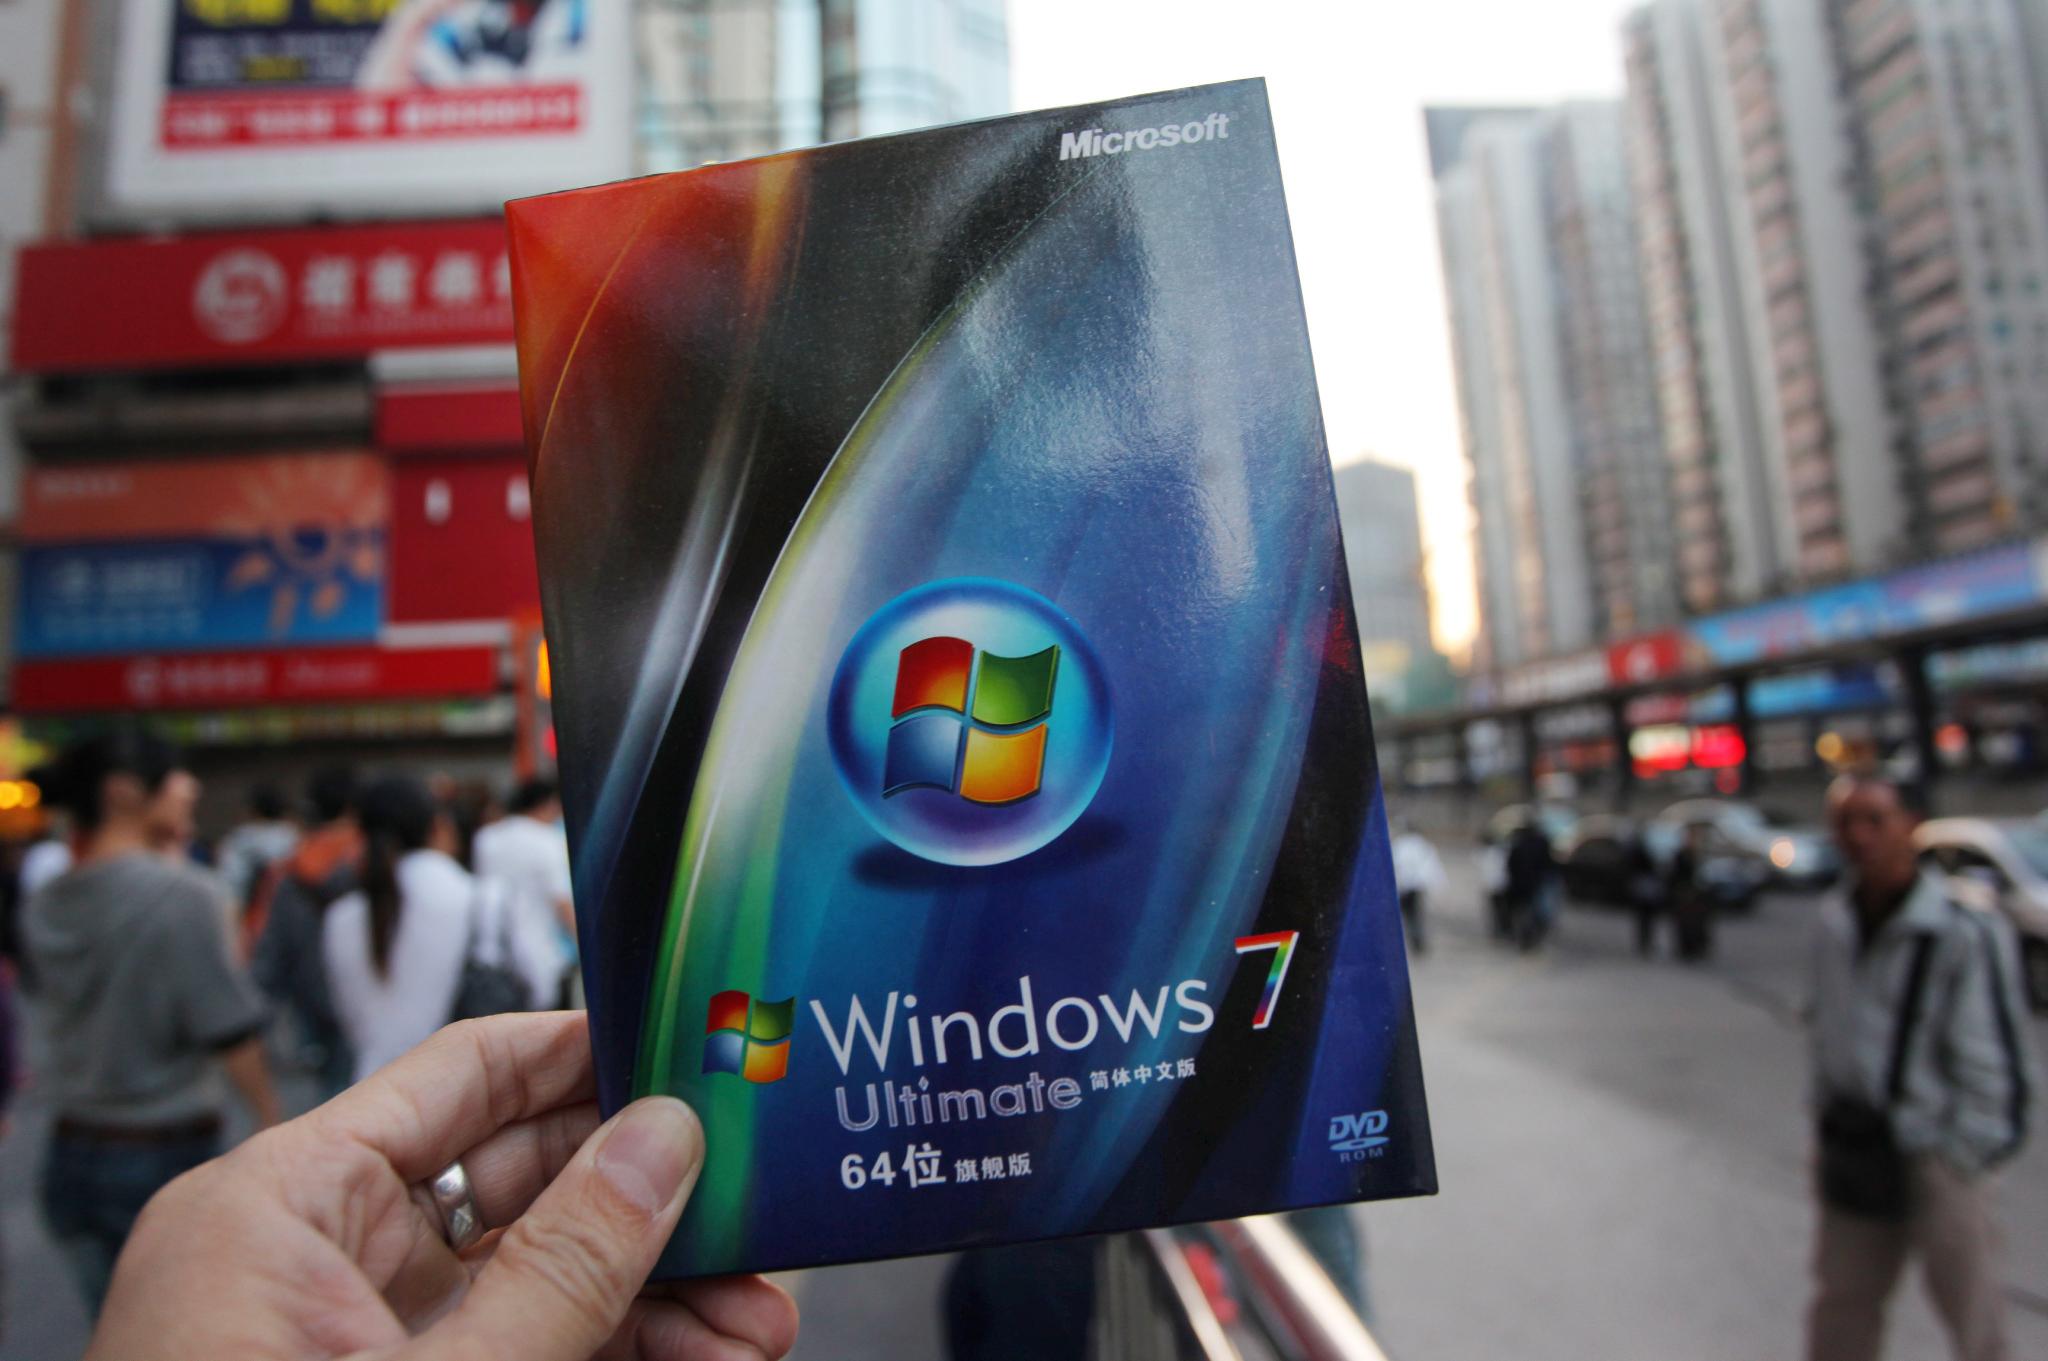 Windows 7 става по-популярен, въпреки че вече има по-нови версии